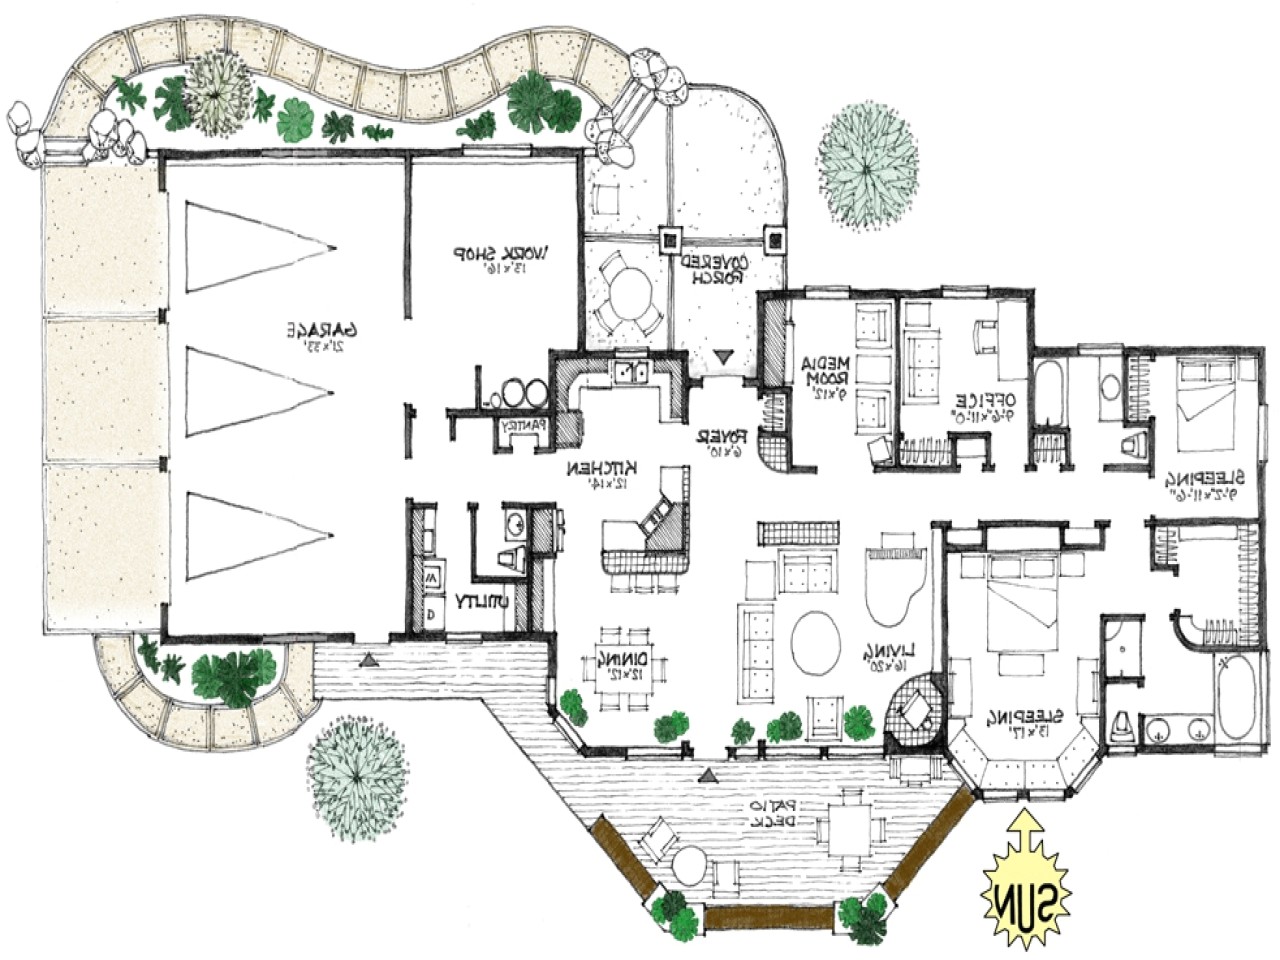 baa371e242be6ecb building an energy efficient home energy efficient house floor plans